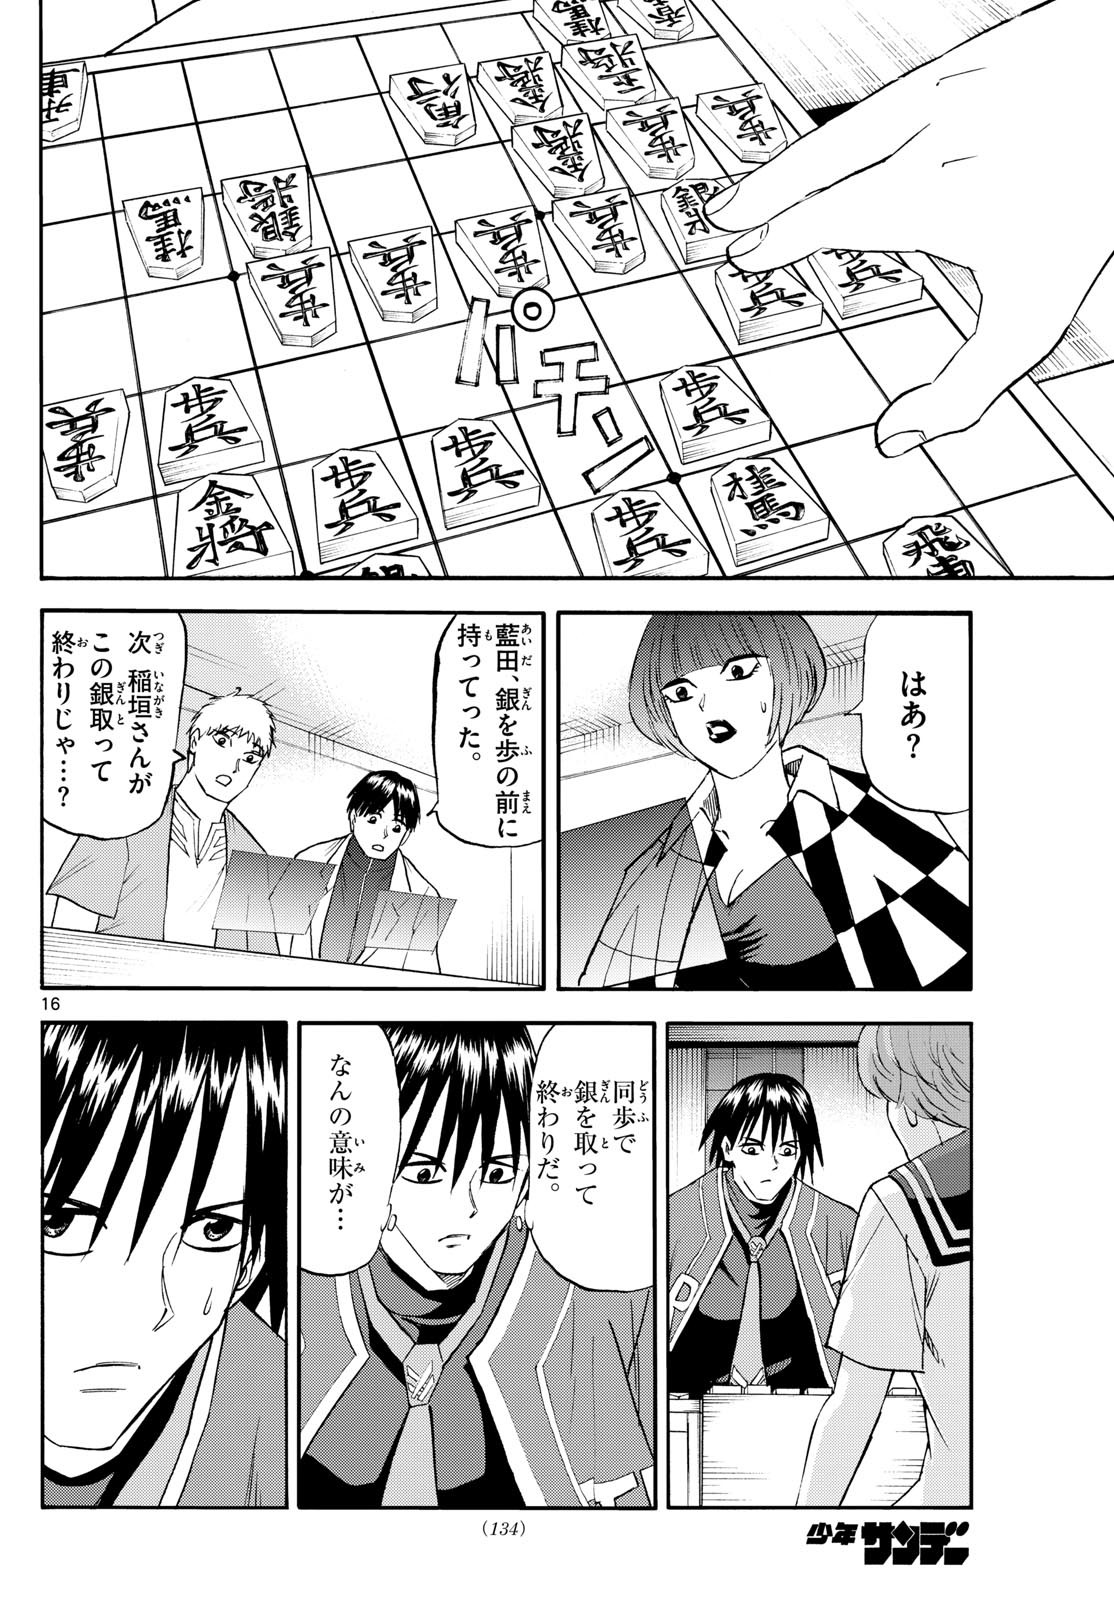 Tatsu to Ichigo - Chapter 197 - Page 16